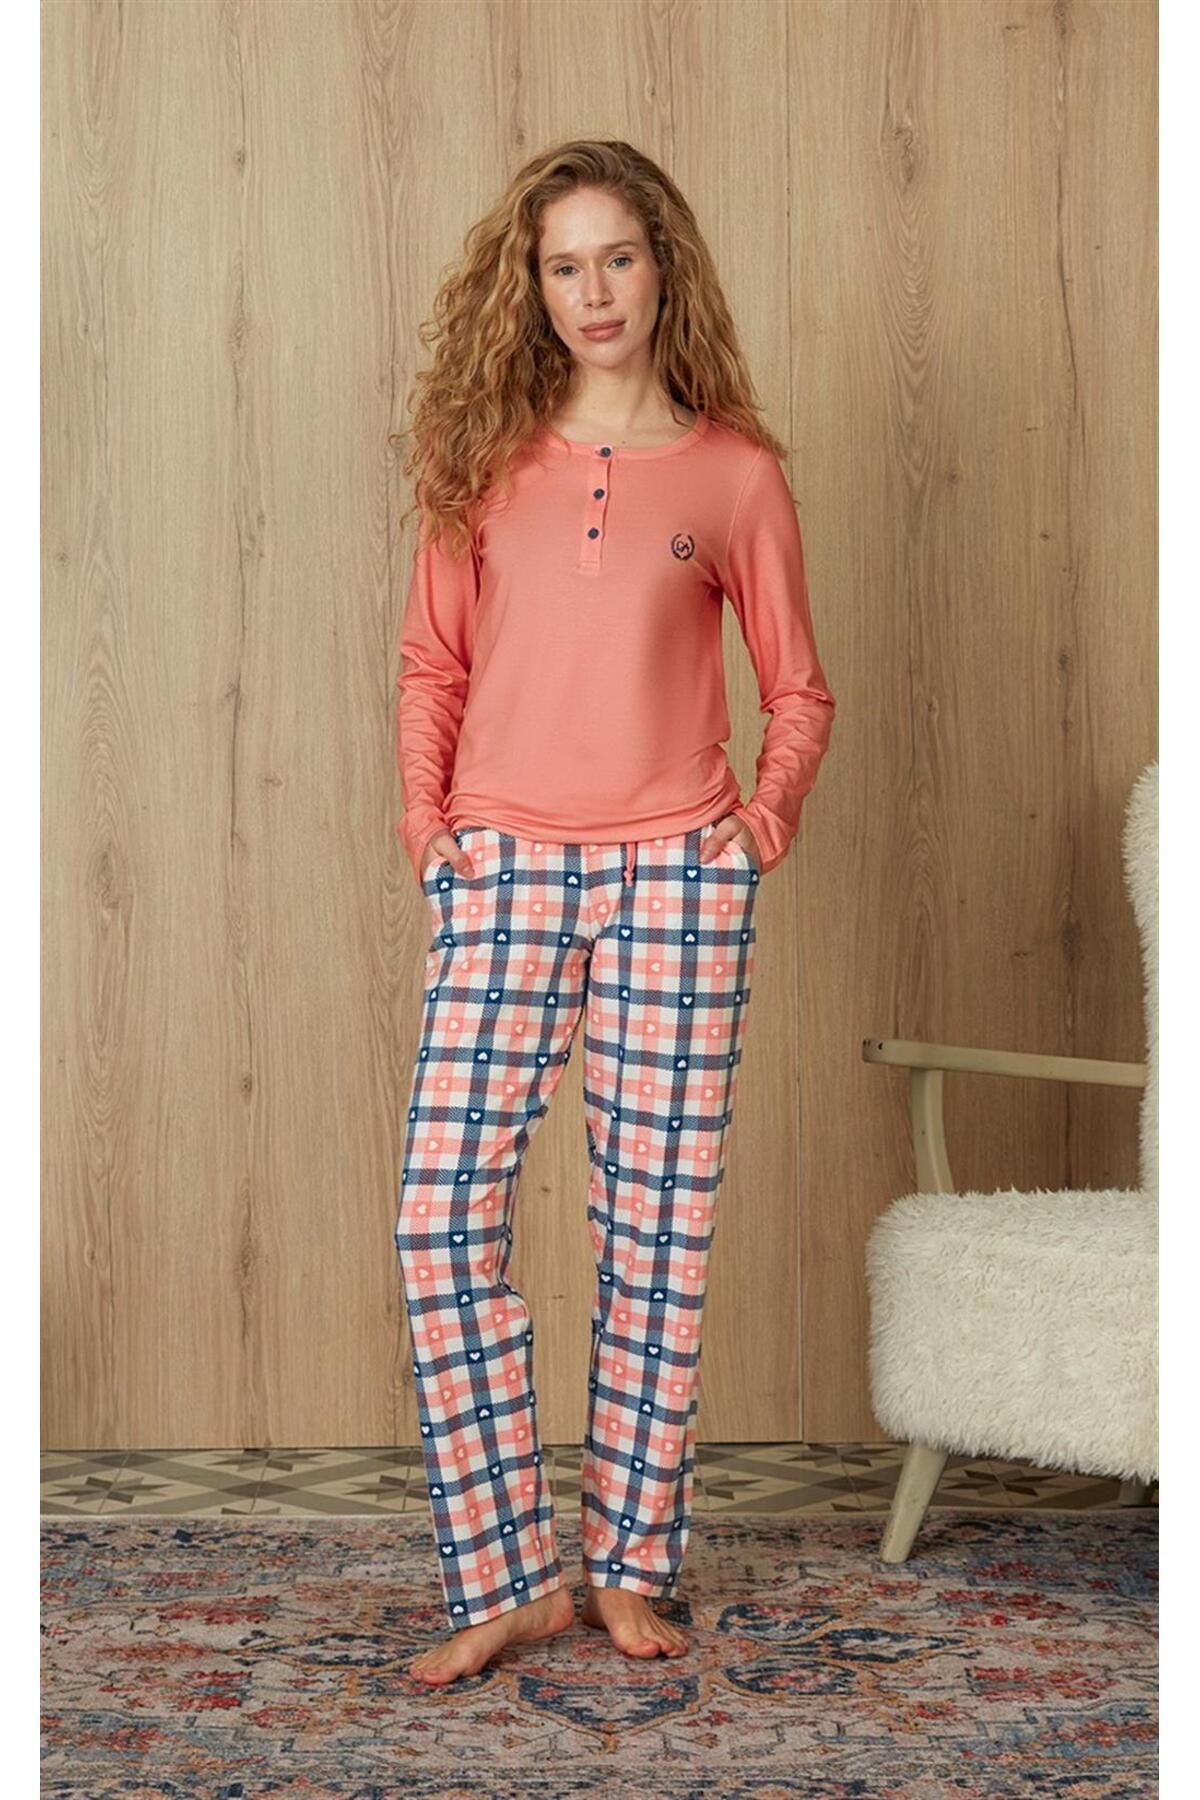 Doreanse Kadın Kareli Kalp Desenli Somon Renk T-shirt Pijama Takımı 4254